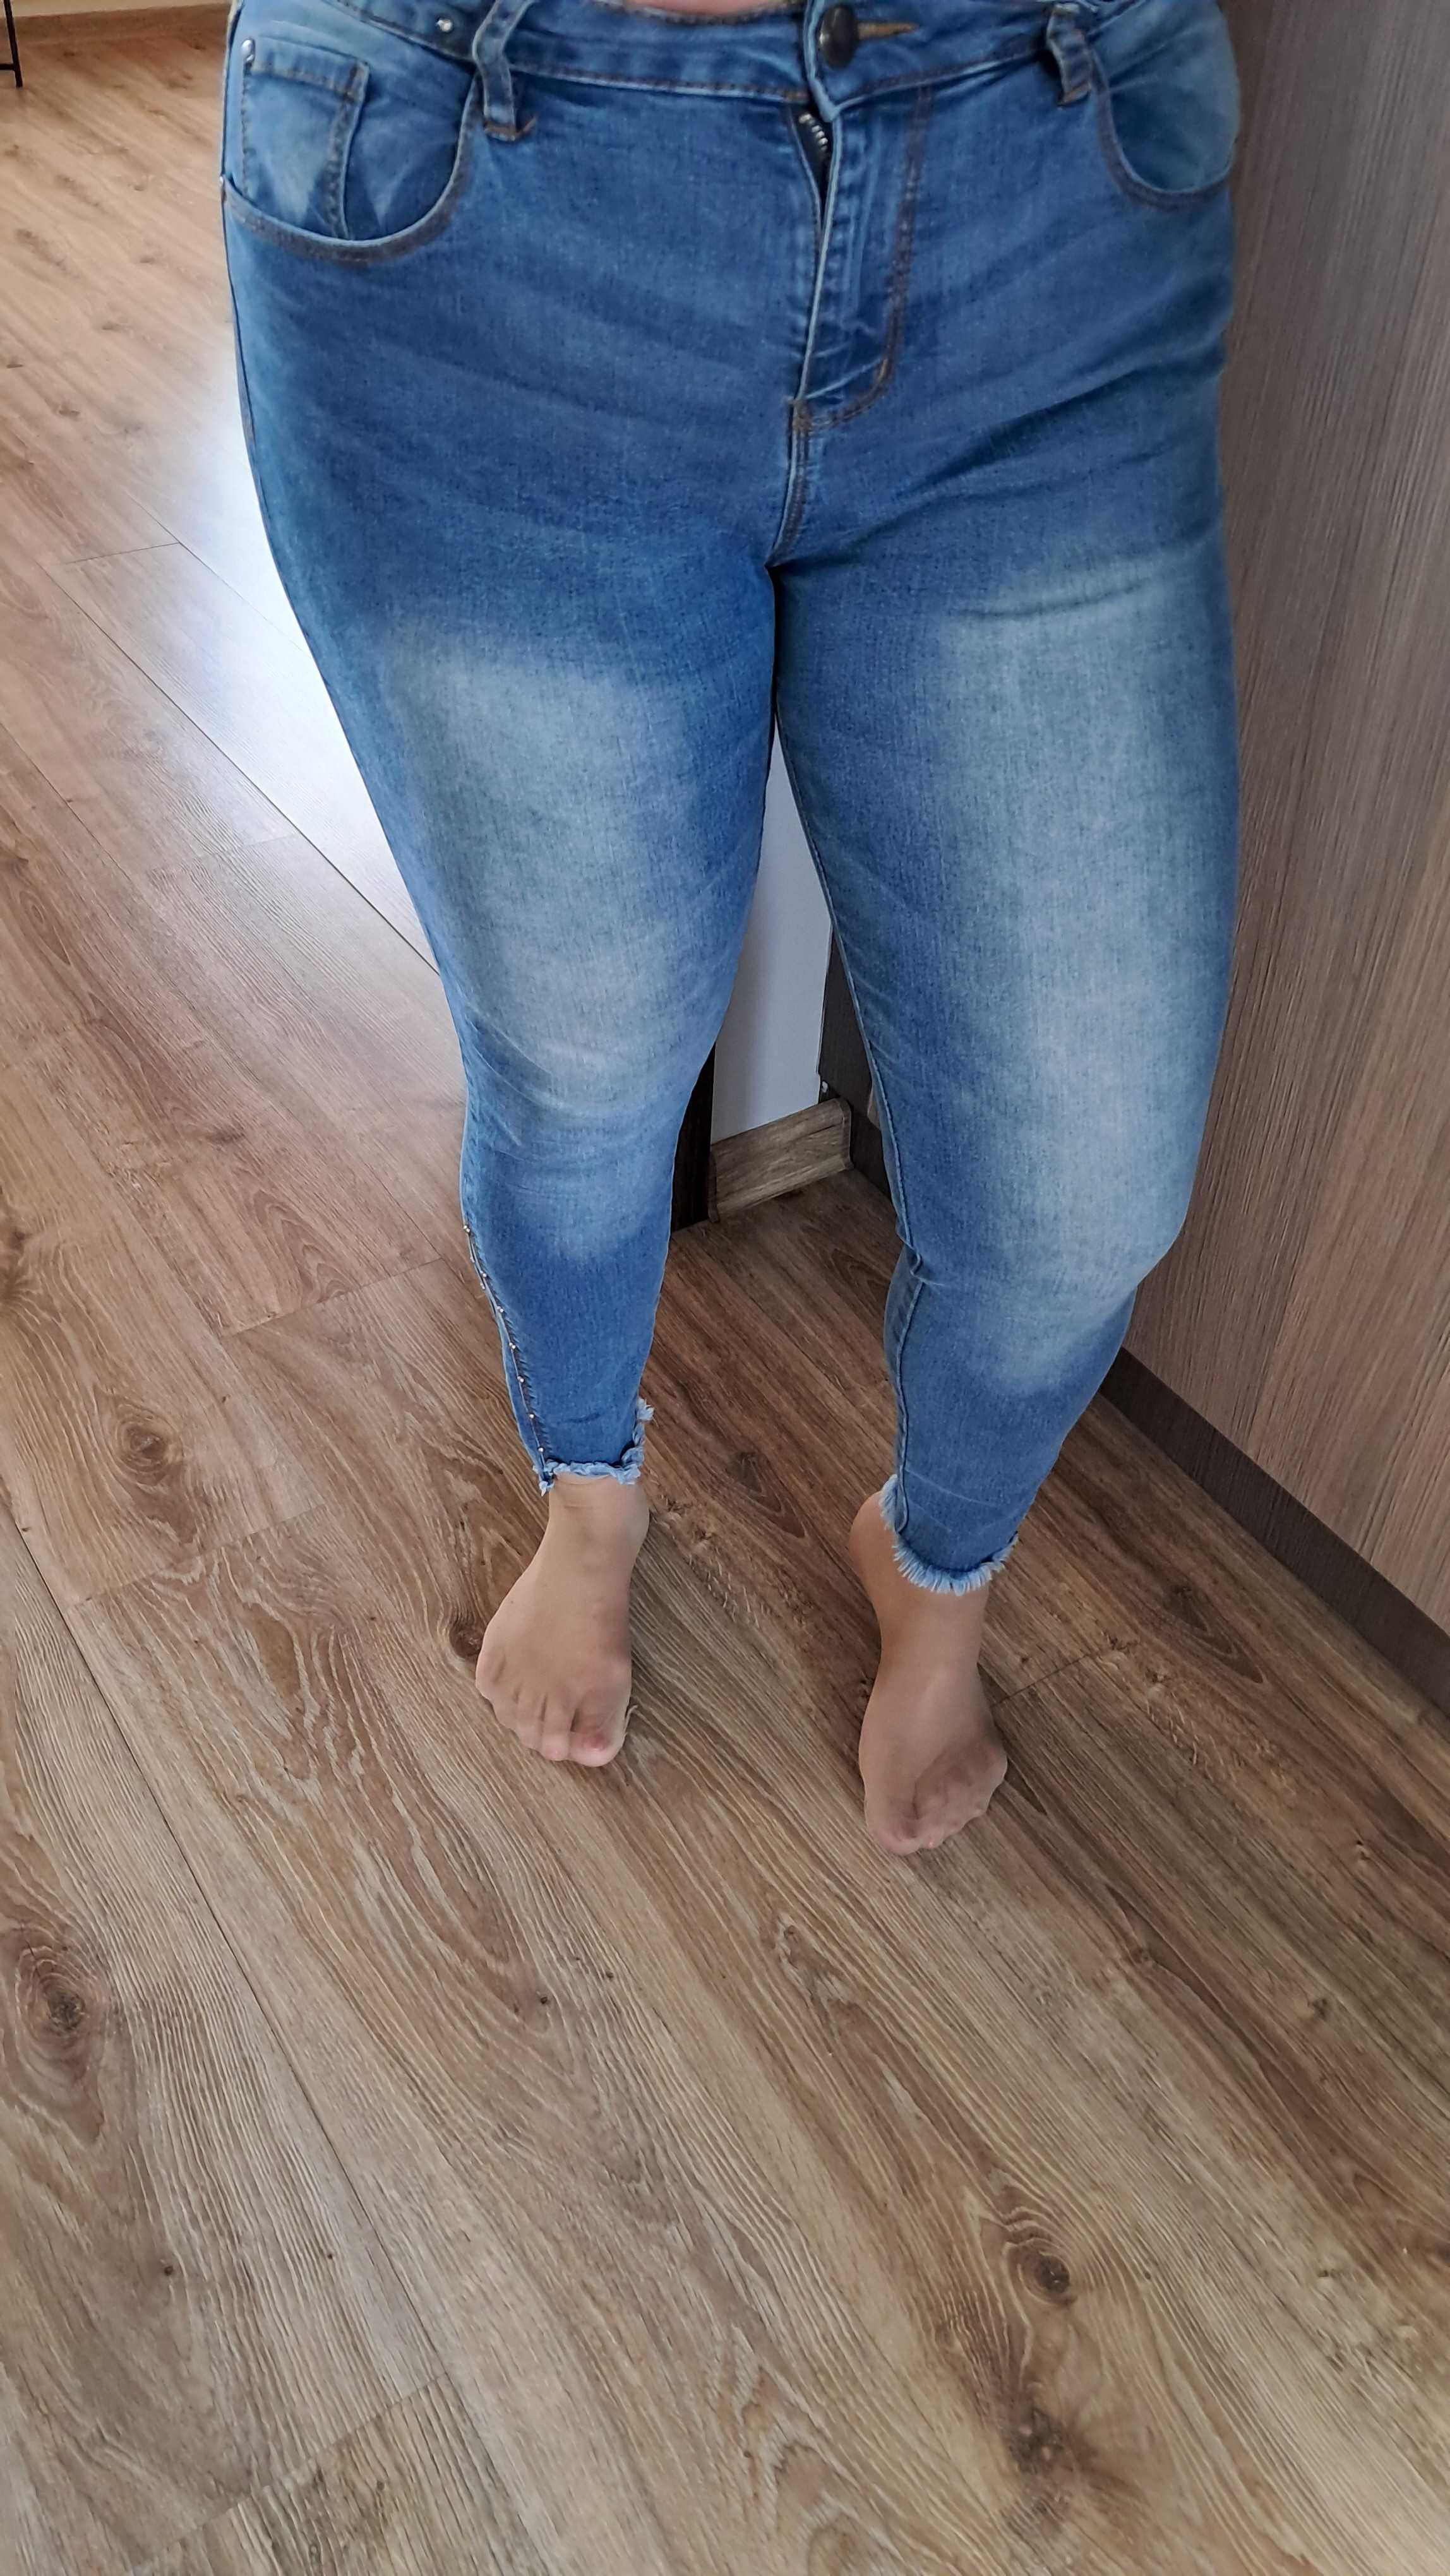 Spodnie Jeansowe damskie Pas 90 cm +laikra nawet do 100 cm dł.90 cm